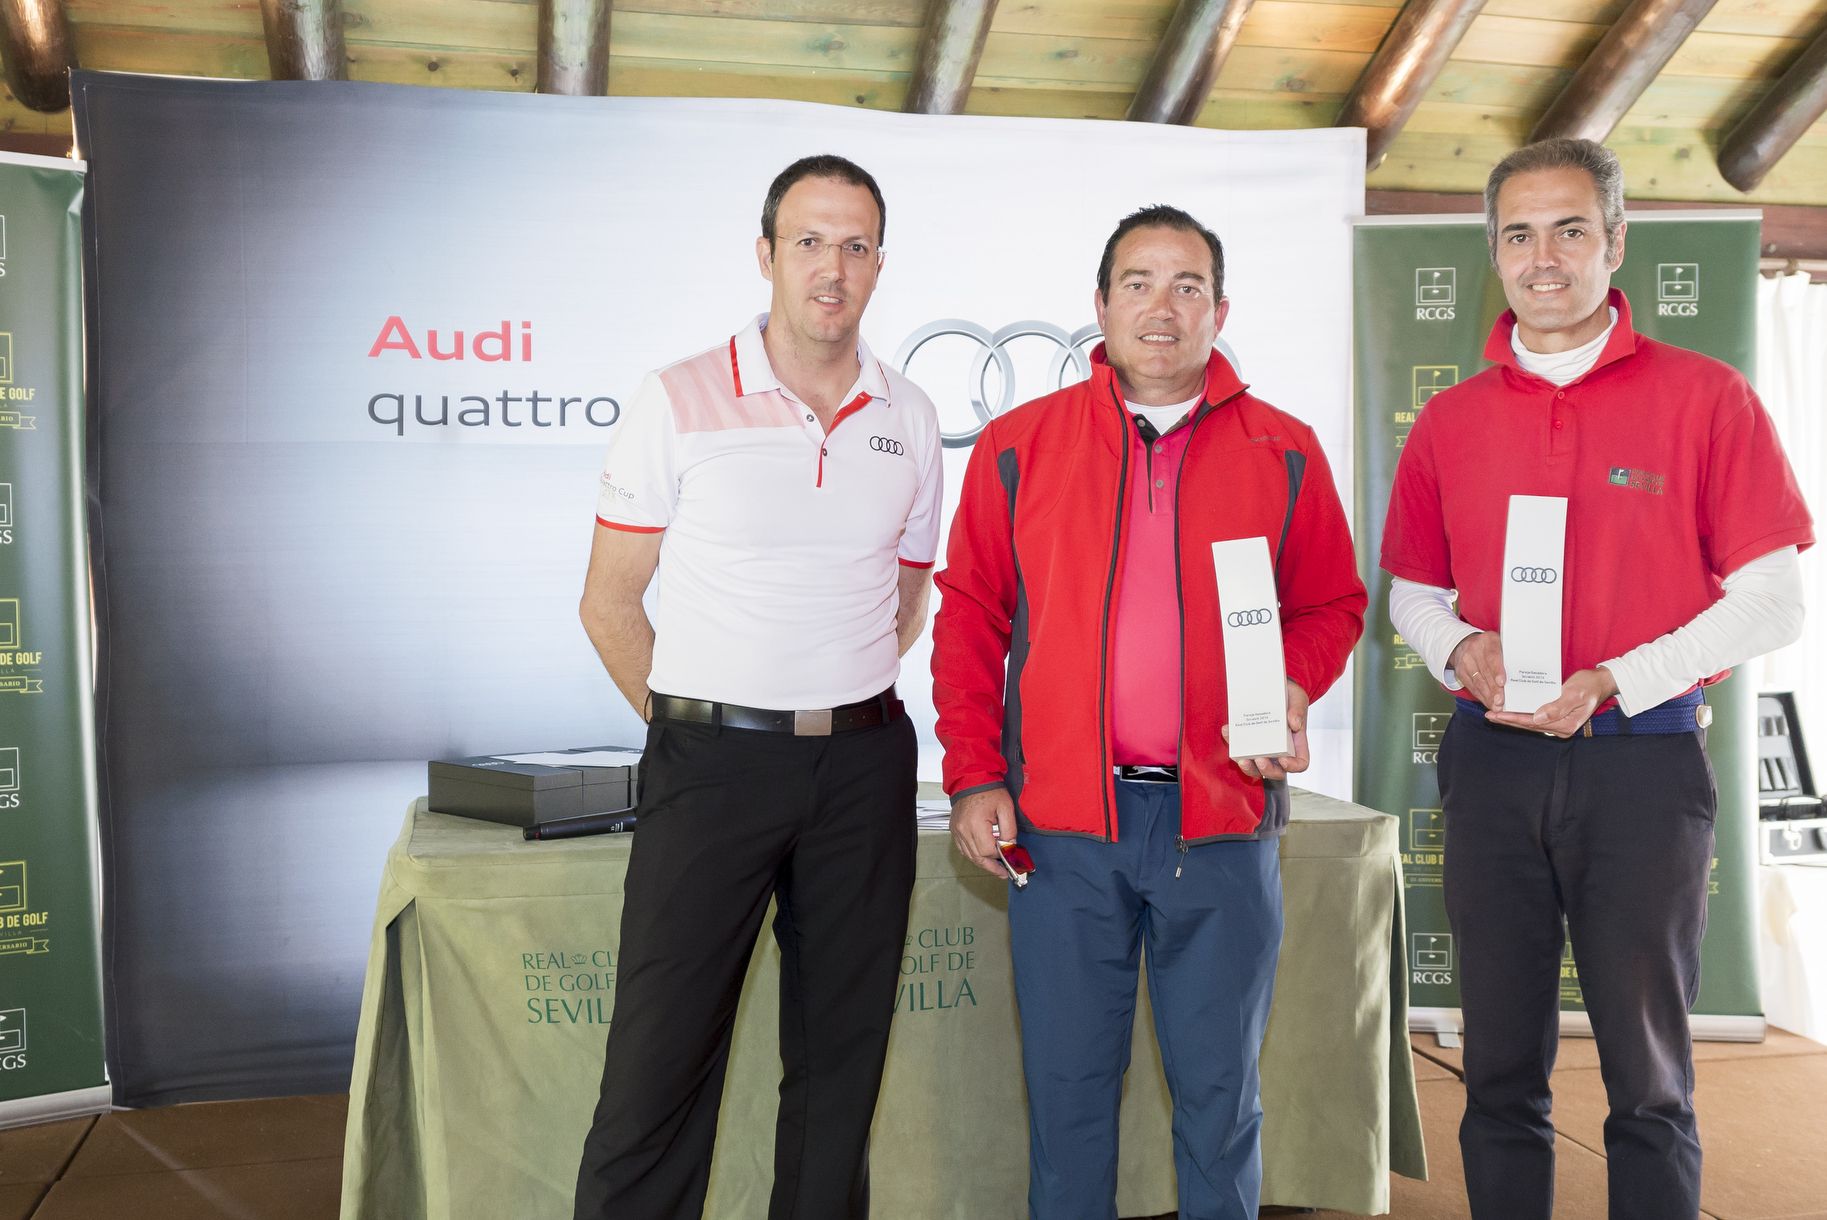 Torneo Audi Quattro Cup en el Real Club de Golf de Sevilla, sábado 19 de Marzo